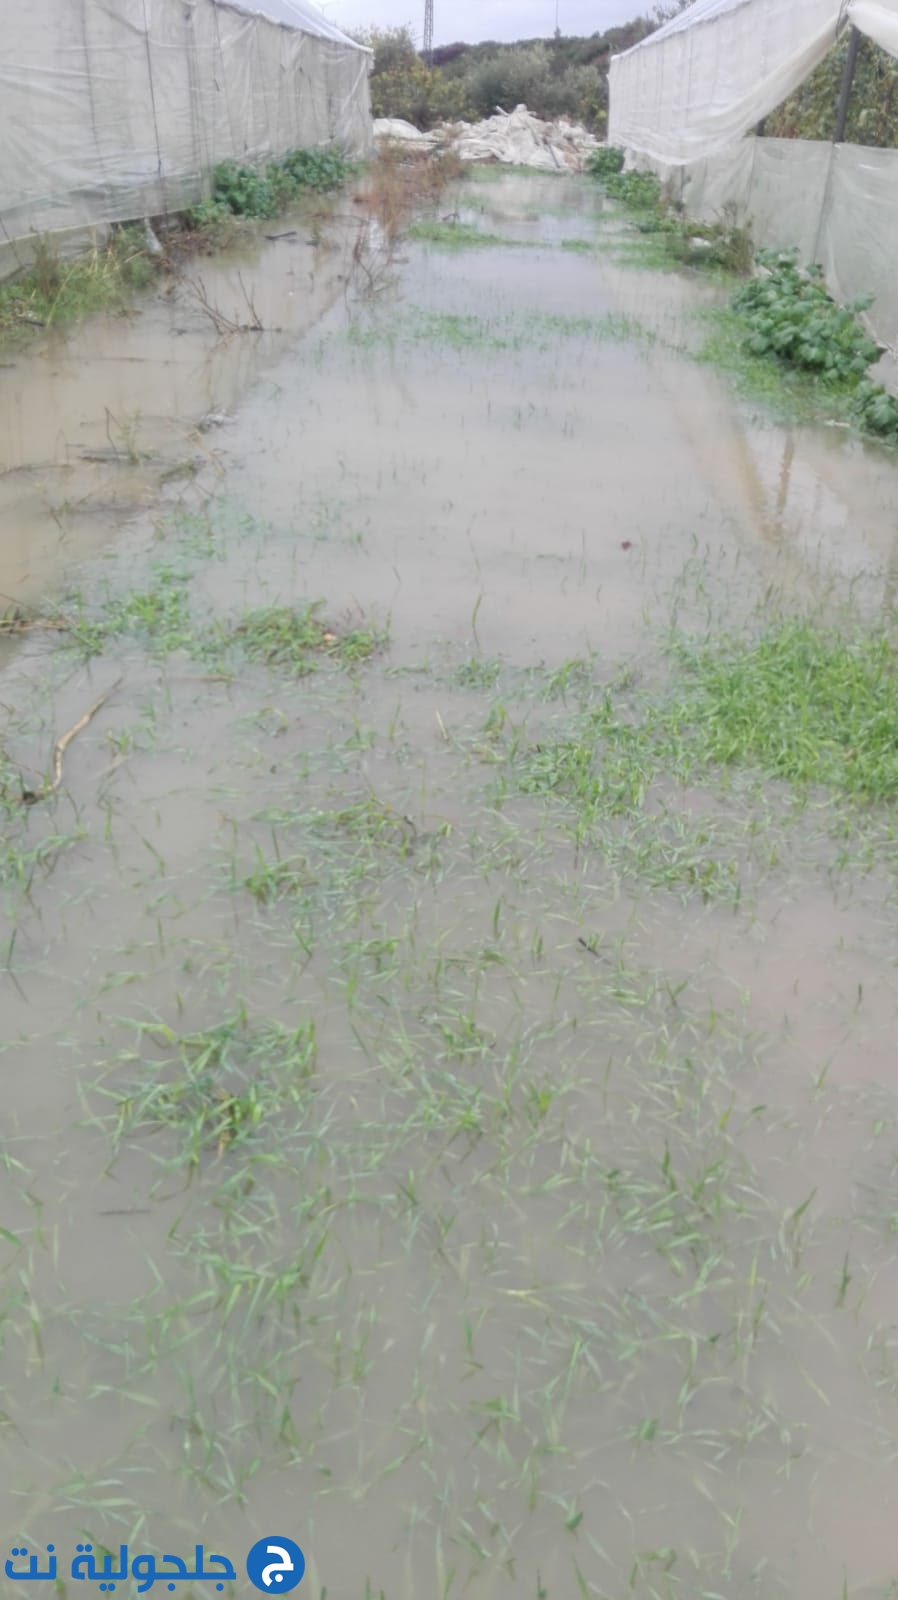 اضرار جسيمة في مزرعة يونس خطيب بسبب السيول